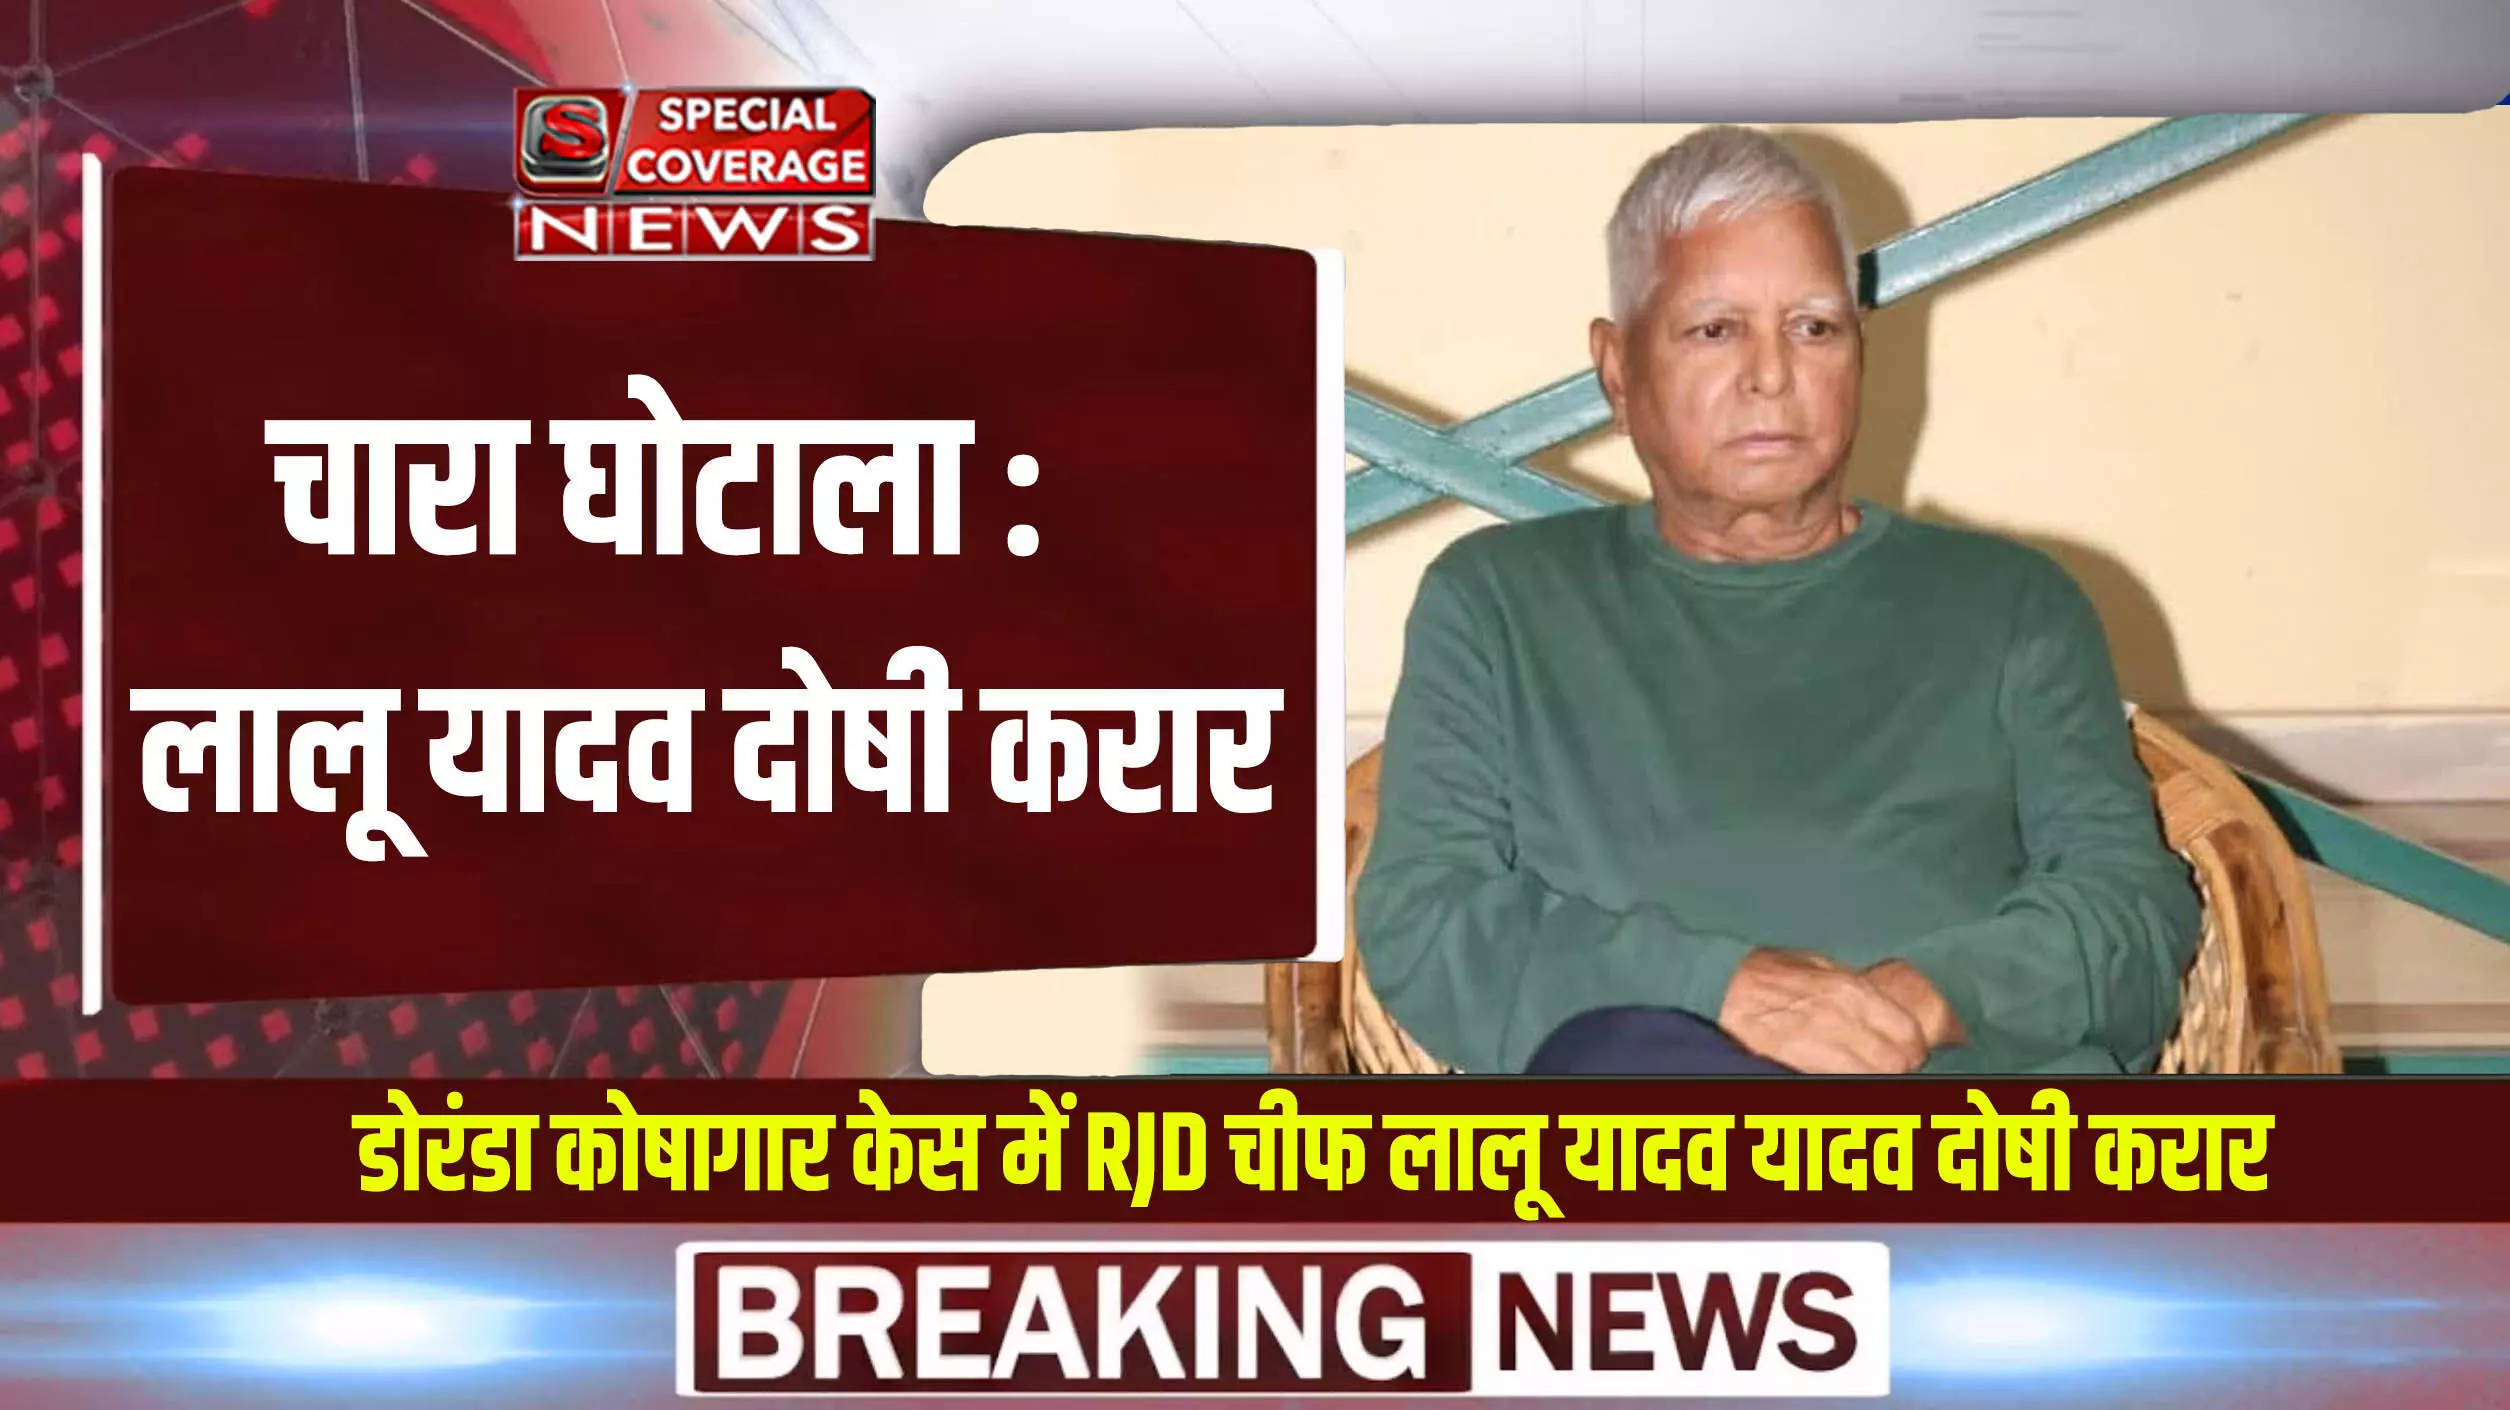 Chara Ghotala: बिहार के पूर्व मुख्यमंत्री लालू यादव पर सीबीआई कोर्ट का फैसला, RJD प्रमुख समेत 75 दोषी करार